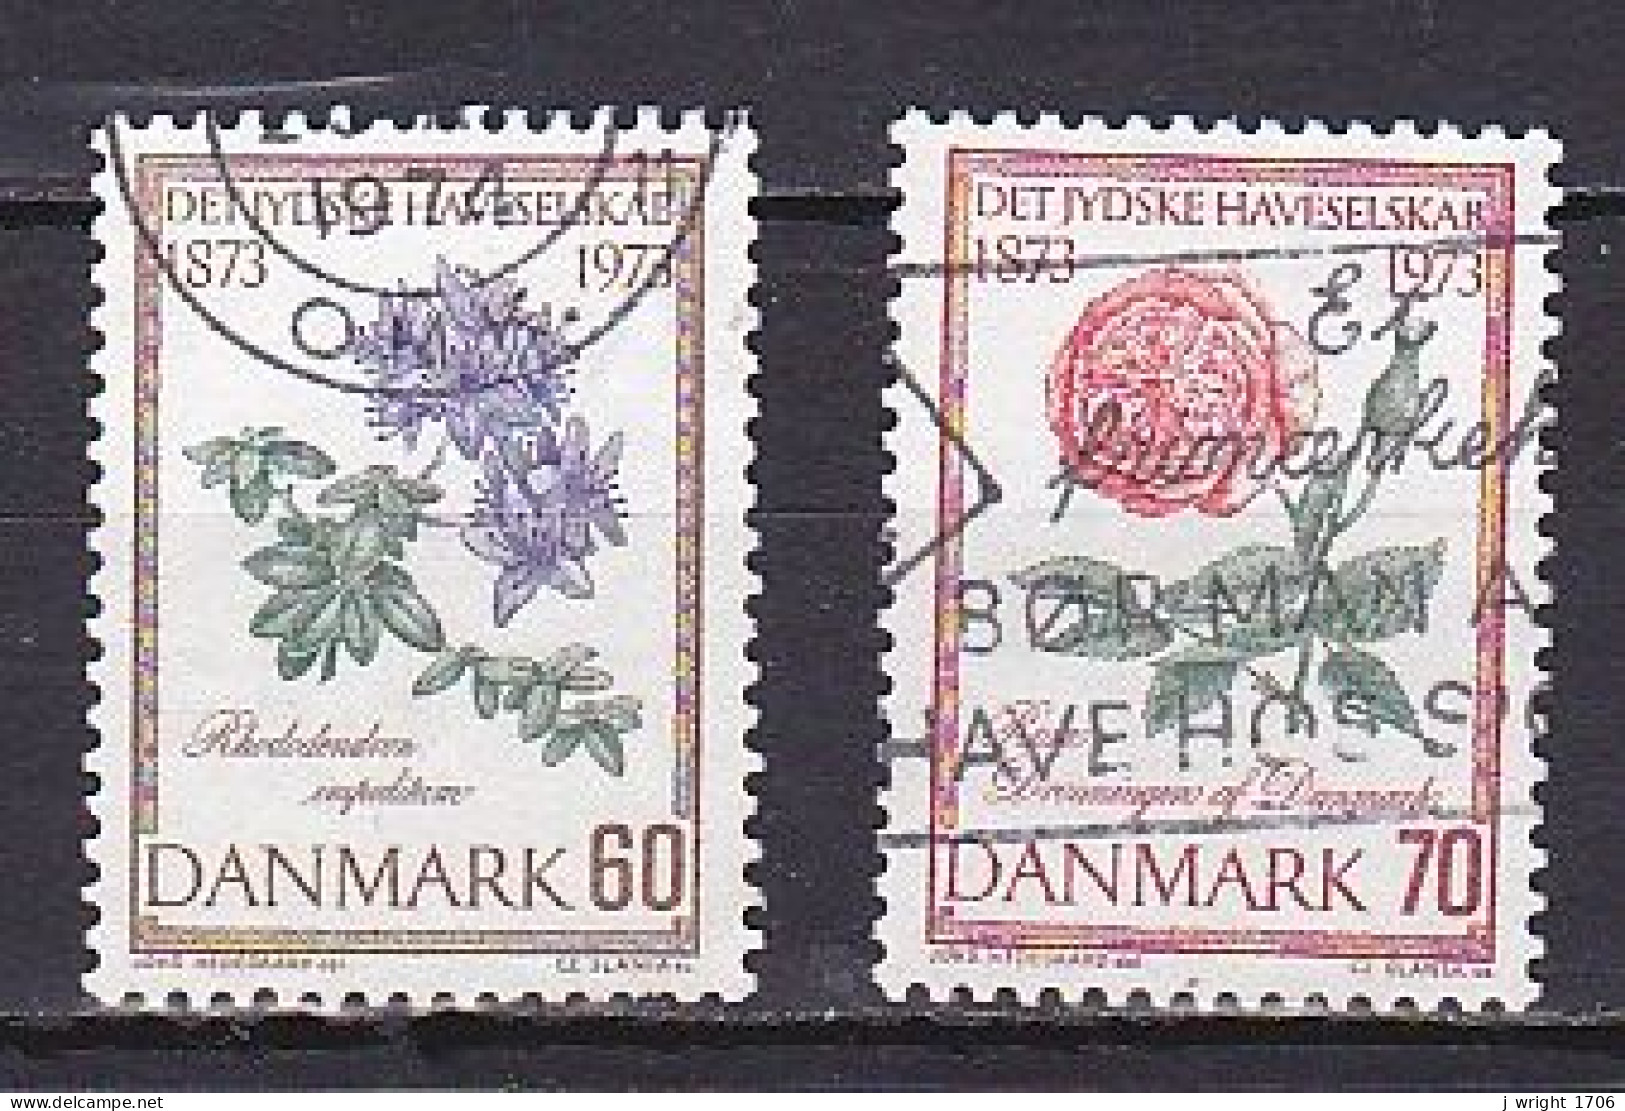 Denmark, 1973, Jutland Horticultural Society Centenary, Set, USED - Usado